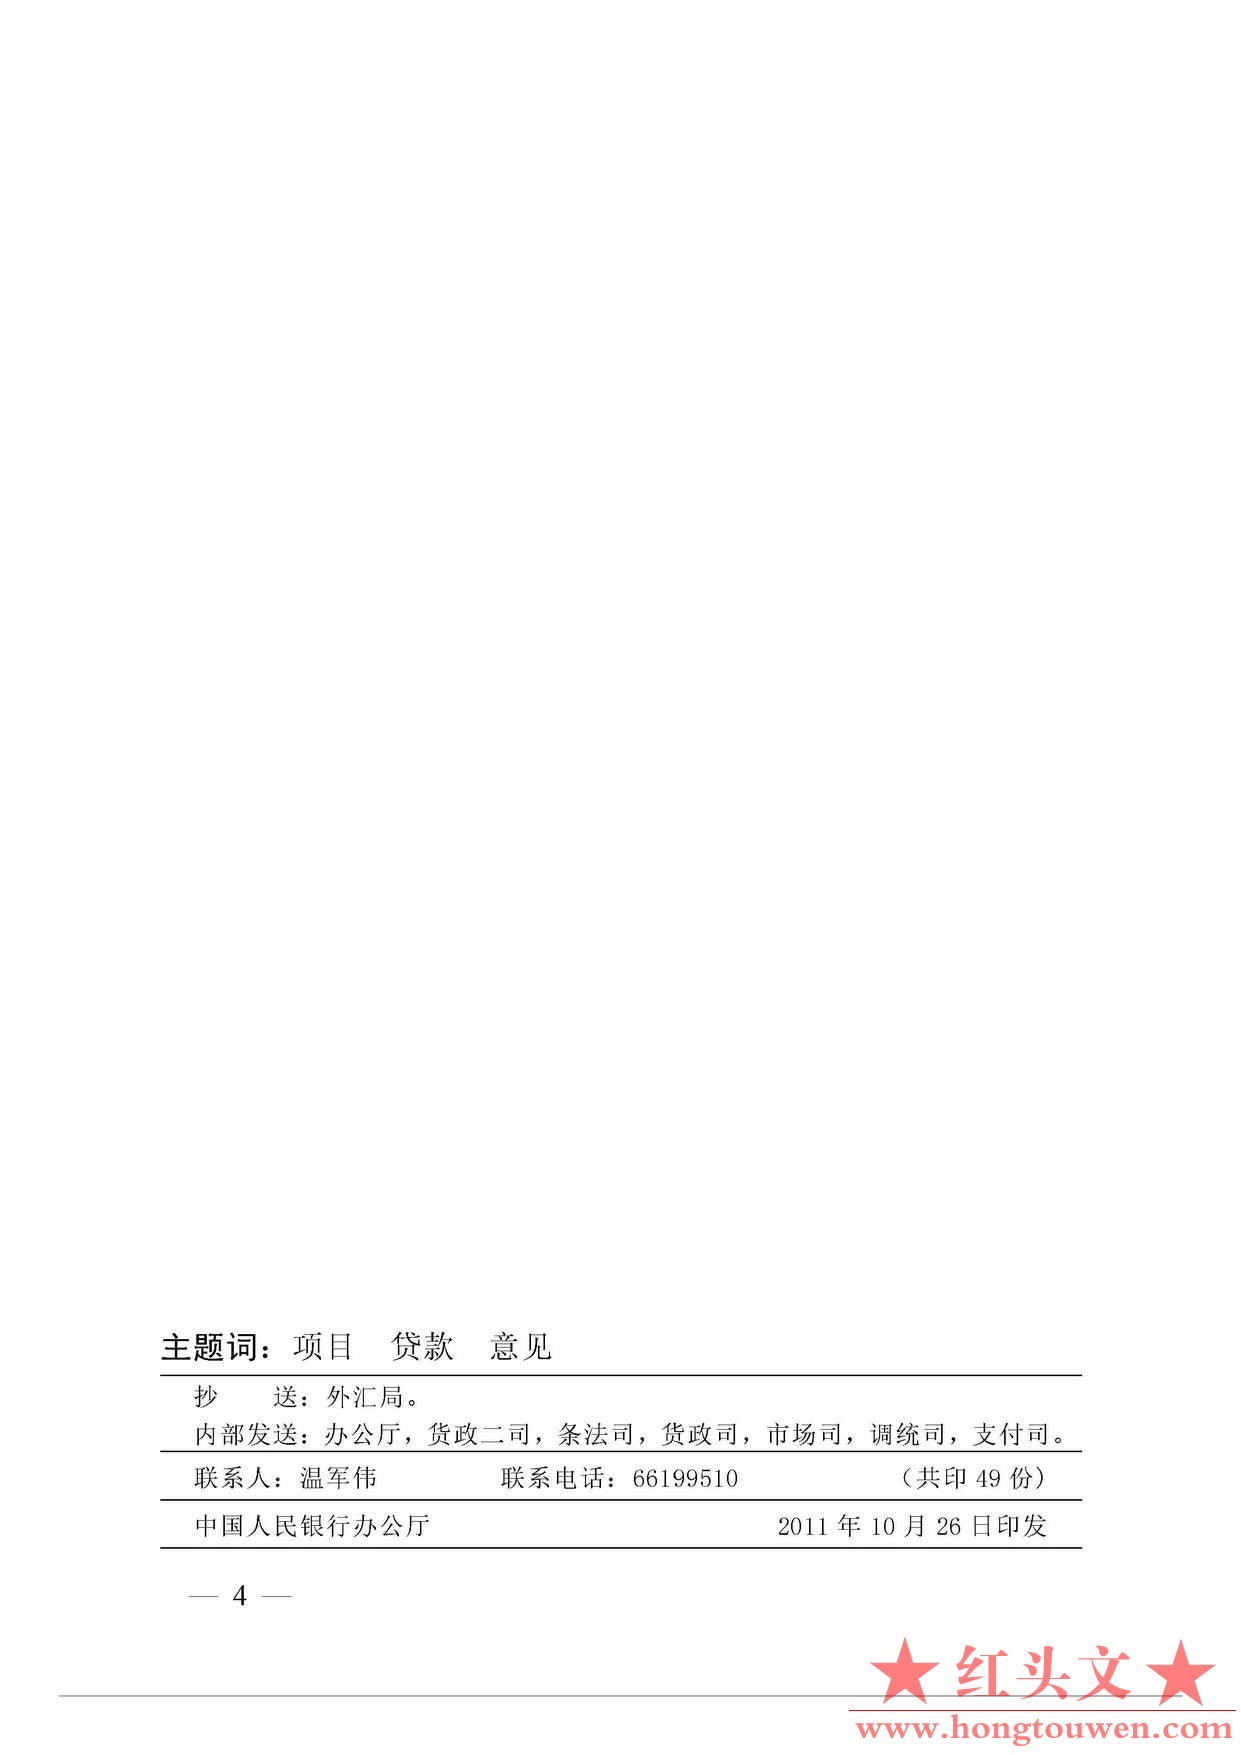 银发[2011]255号-中国人民银行关于境内银行业金融机构境外项目人民币贷款的指导意见_.jpg